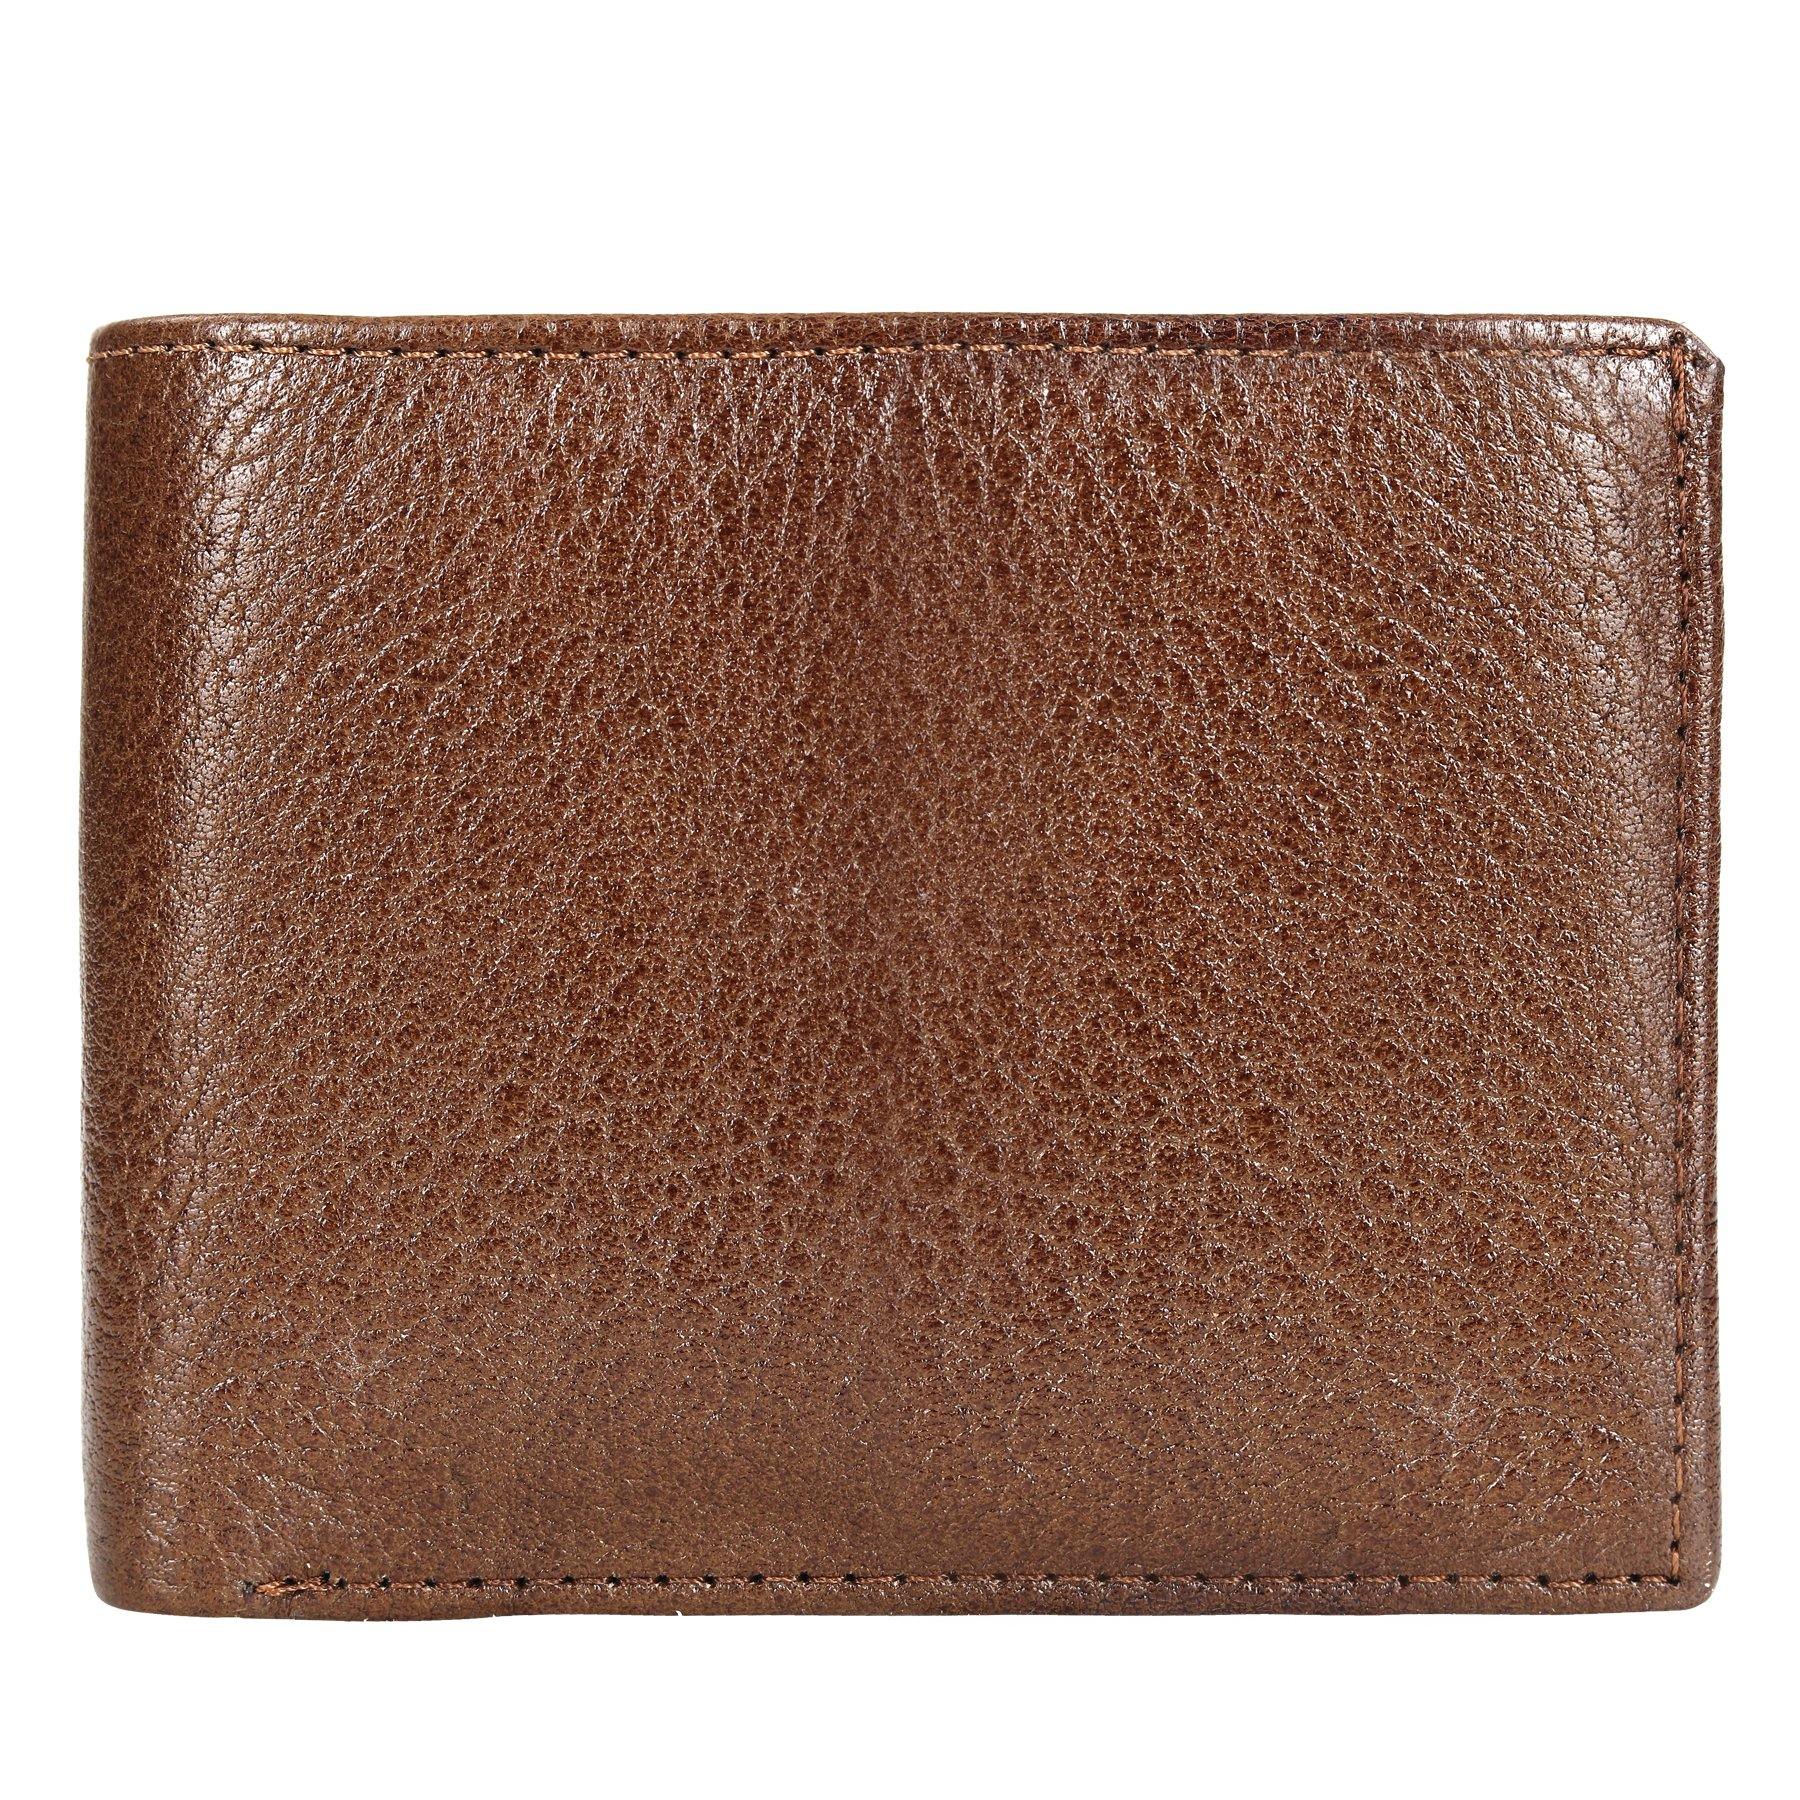 Opulent Leather Wallet - Leatherworldonline.net